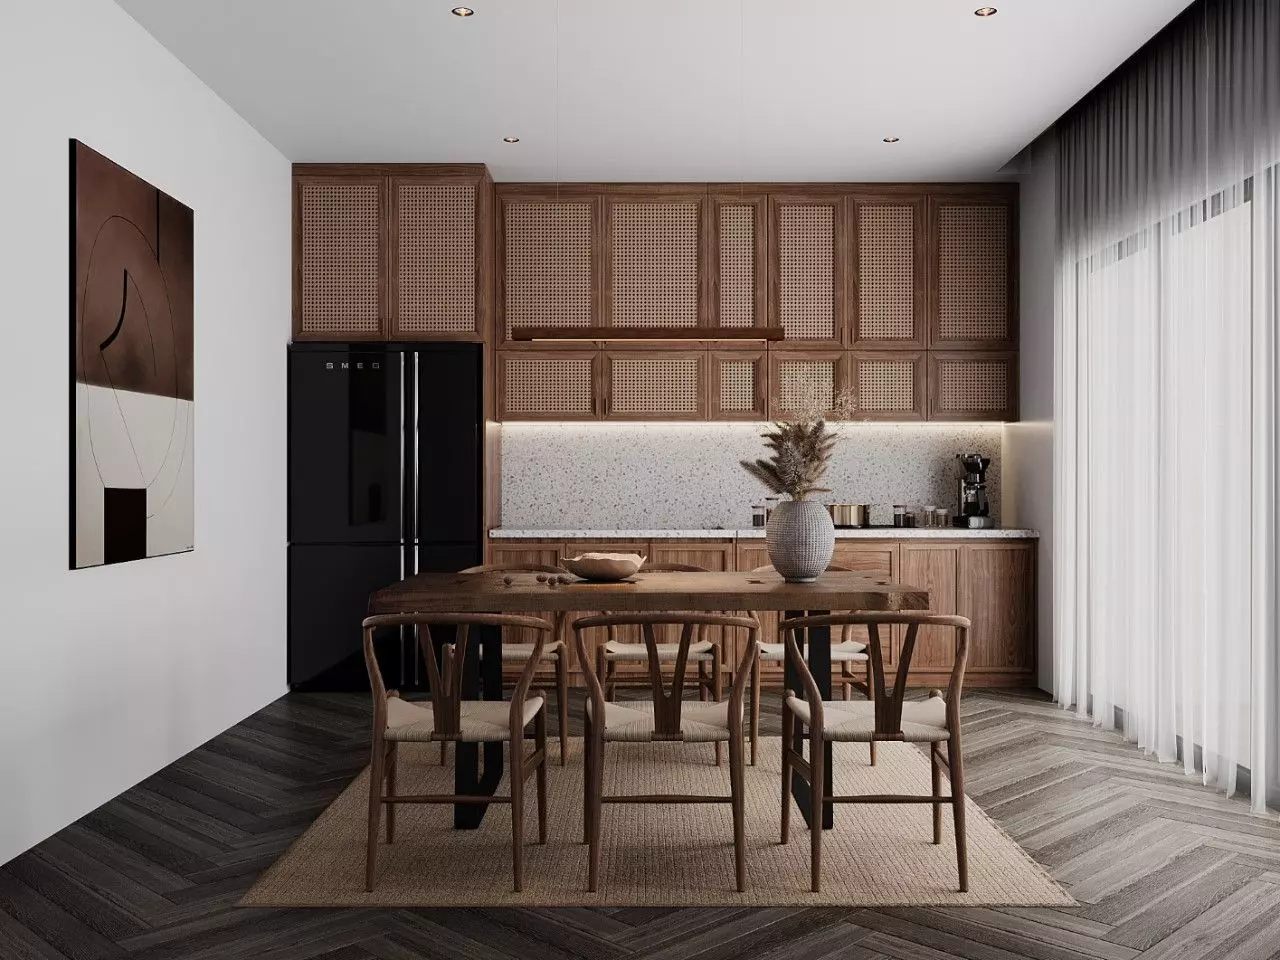 Mẫu thiết kế tủ bếp bằng gỗ tự nhiên mang đến không gian sang trọng và ấm cúng